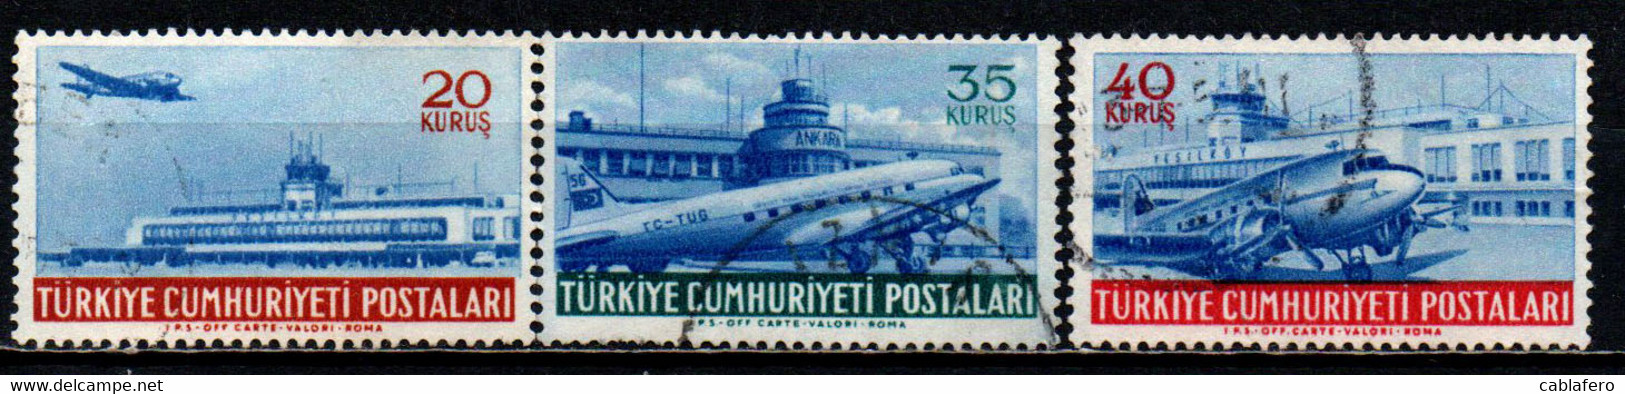 TURCHIA - 1954 - AEROPORTO DI YESILKOY E DI ANKARA - USATI - Posta Aerea